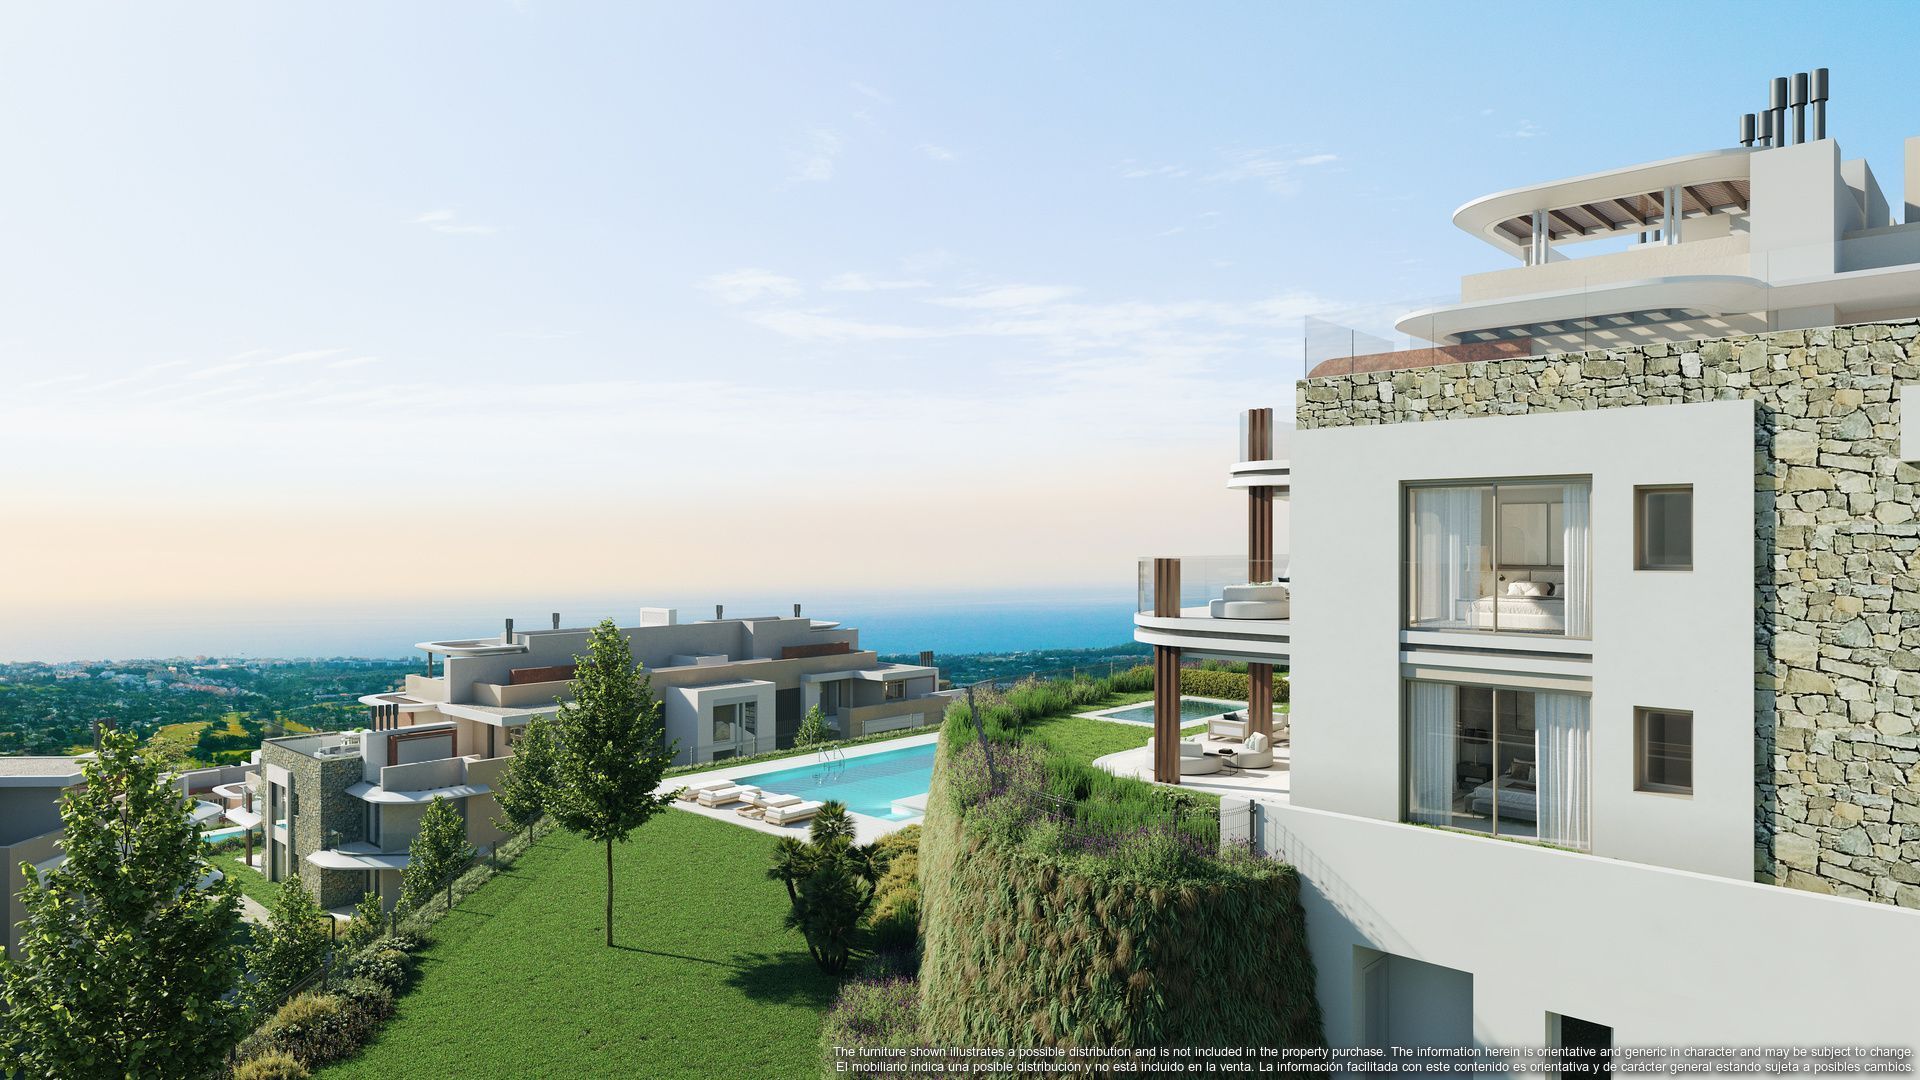 This latest development raises the bar for luxury living in Marbella, Benahavis foto-7